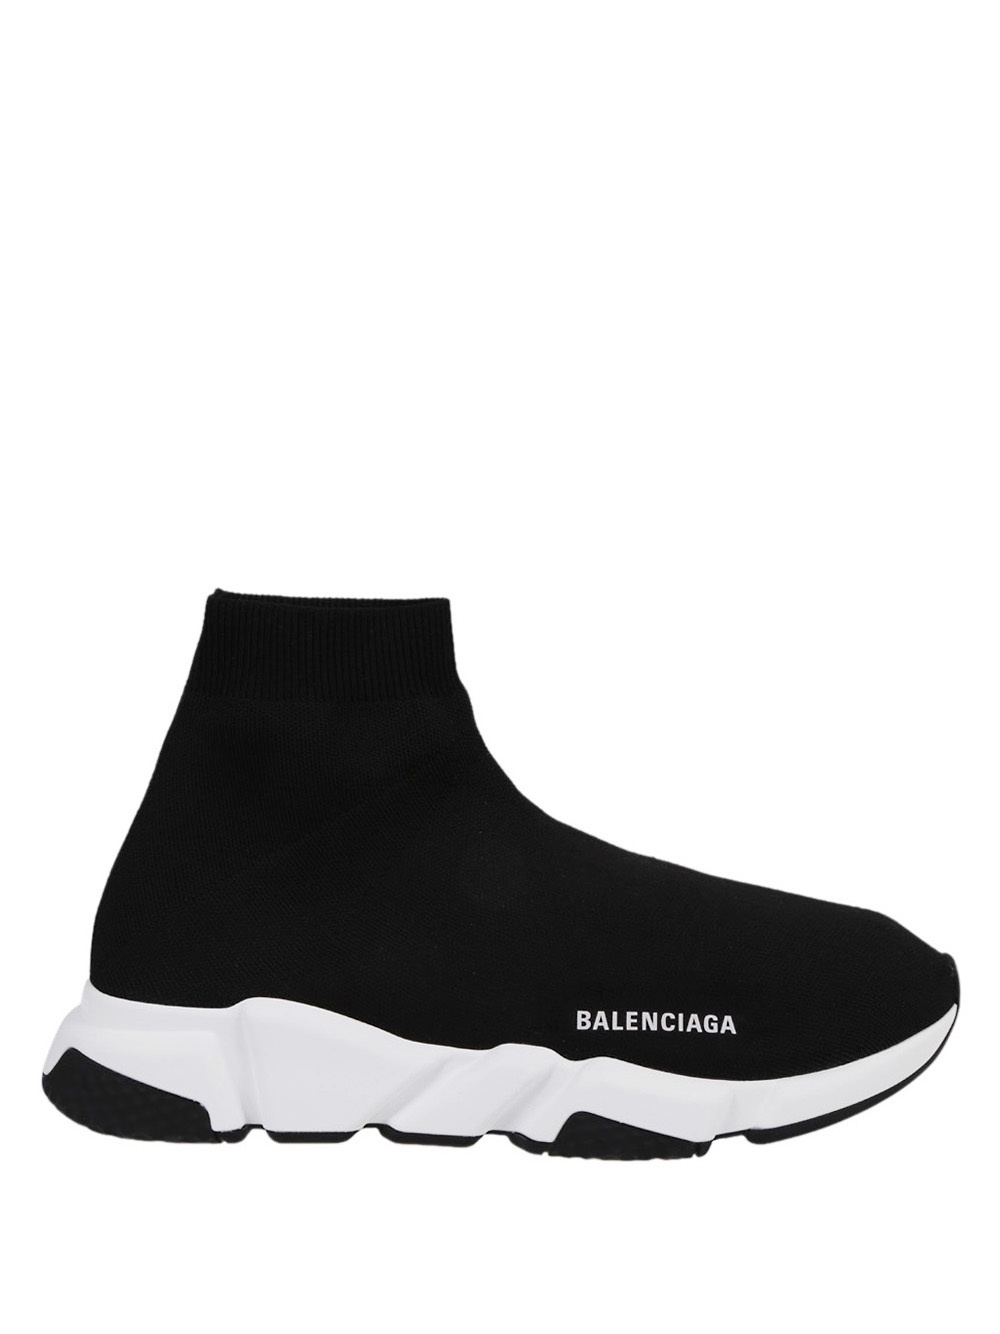 BALENCIAGA - Sneakers With Logo Balenciaga